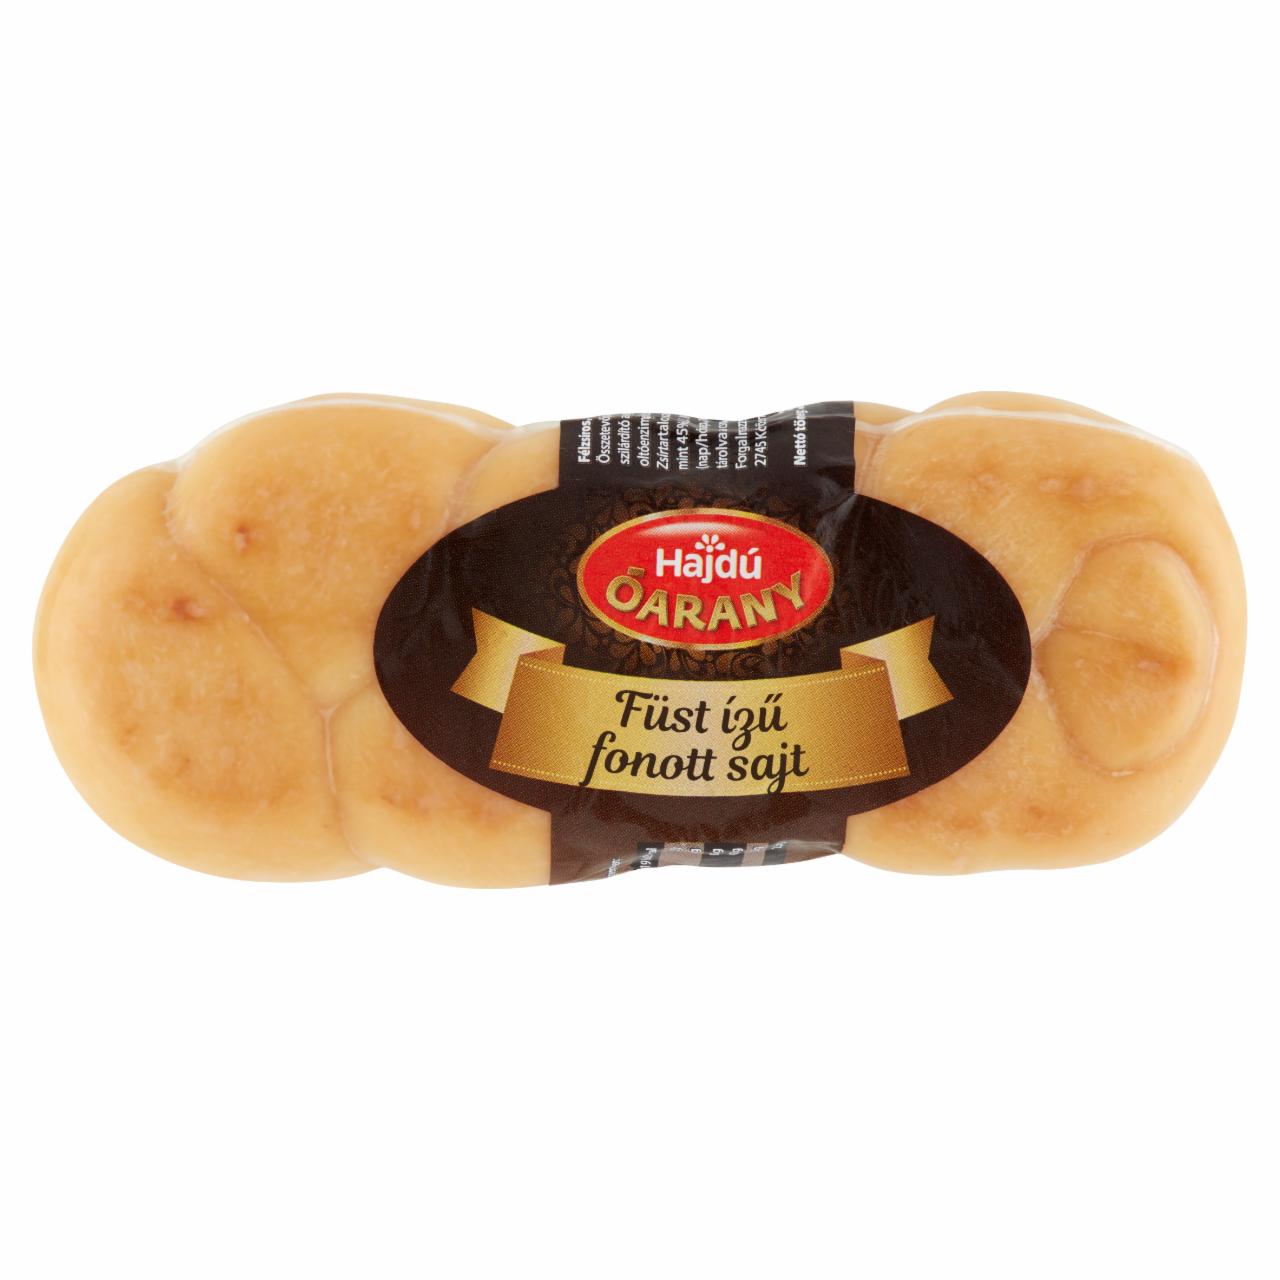 Képek - Hajdú Óarany füst ízű fonott sajt 300 g